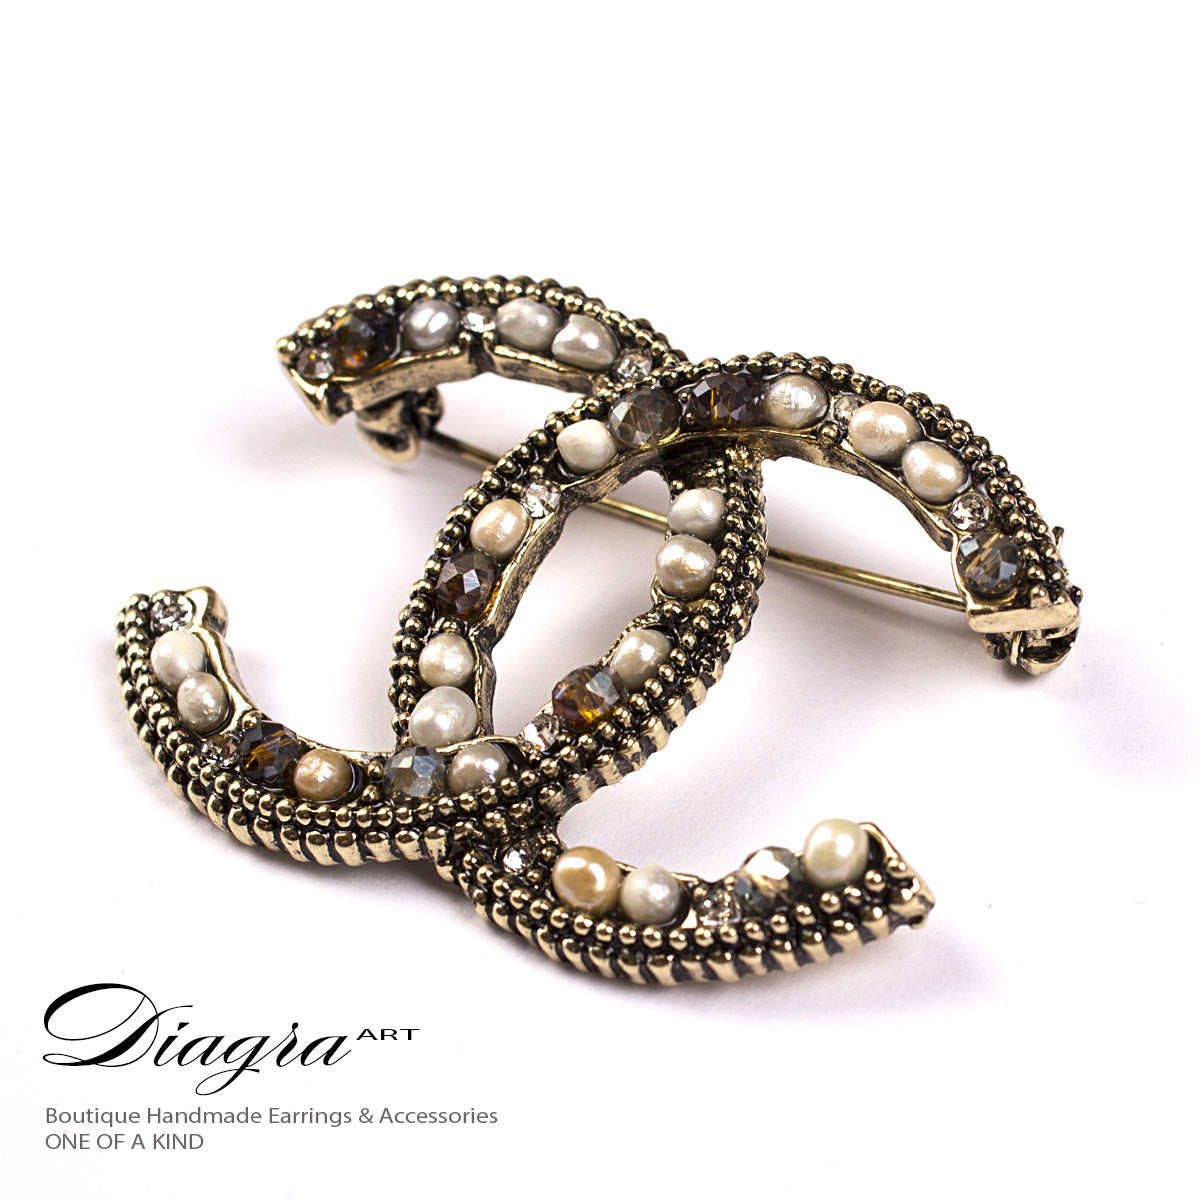 Chanel brooch handmade Diagra Art 61914 designer inspired